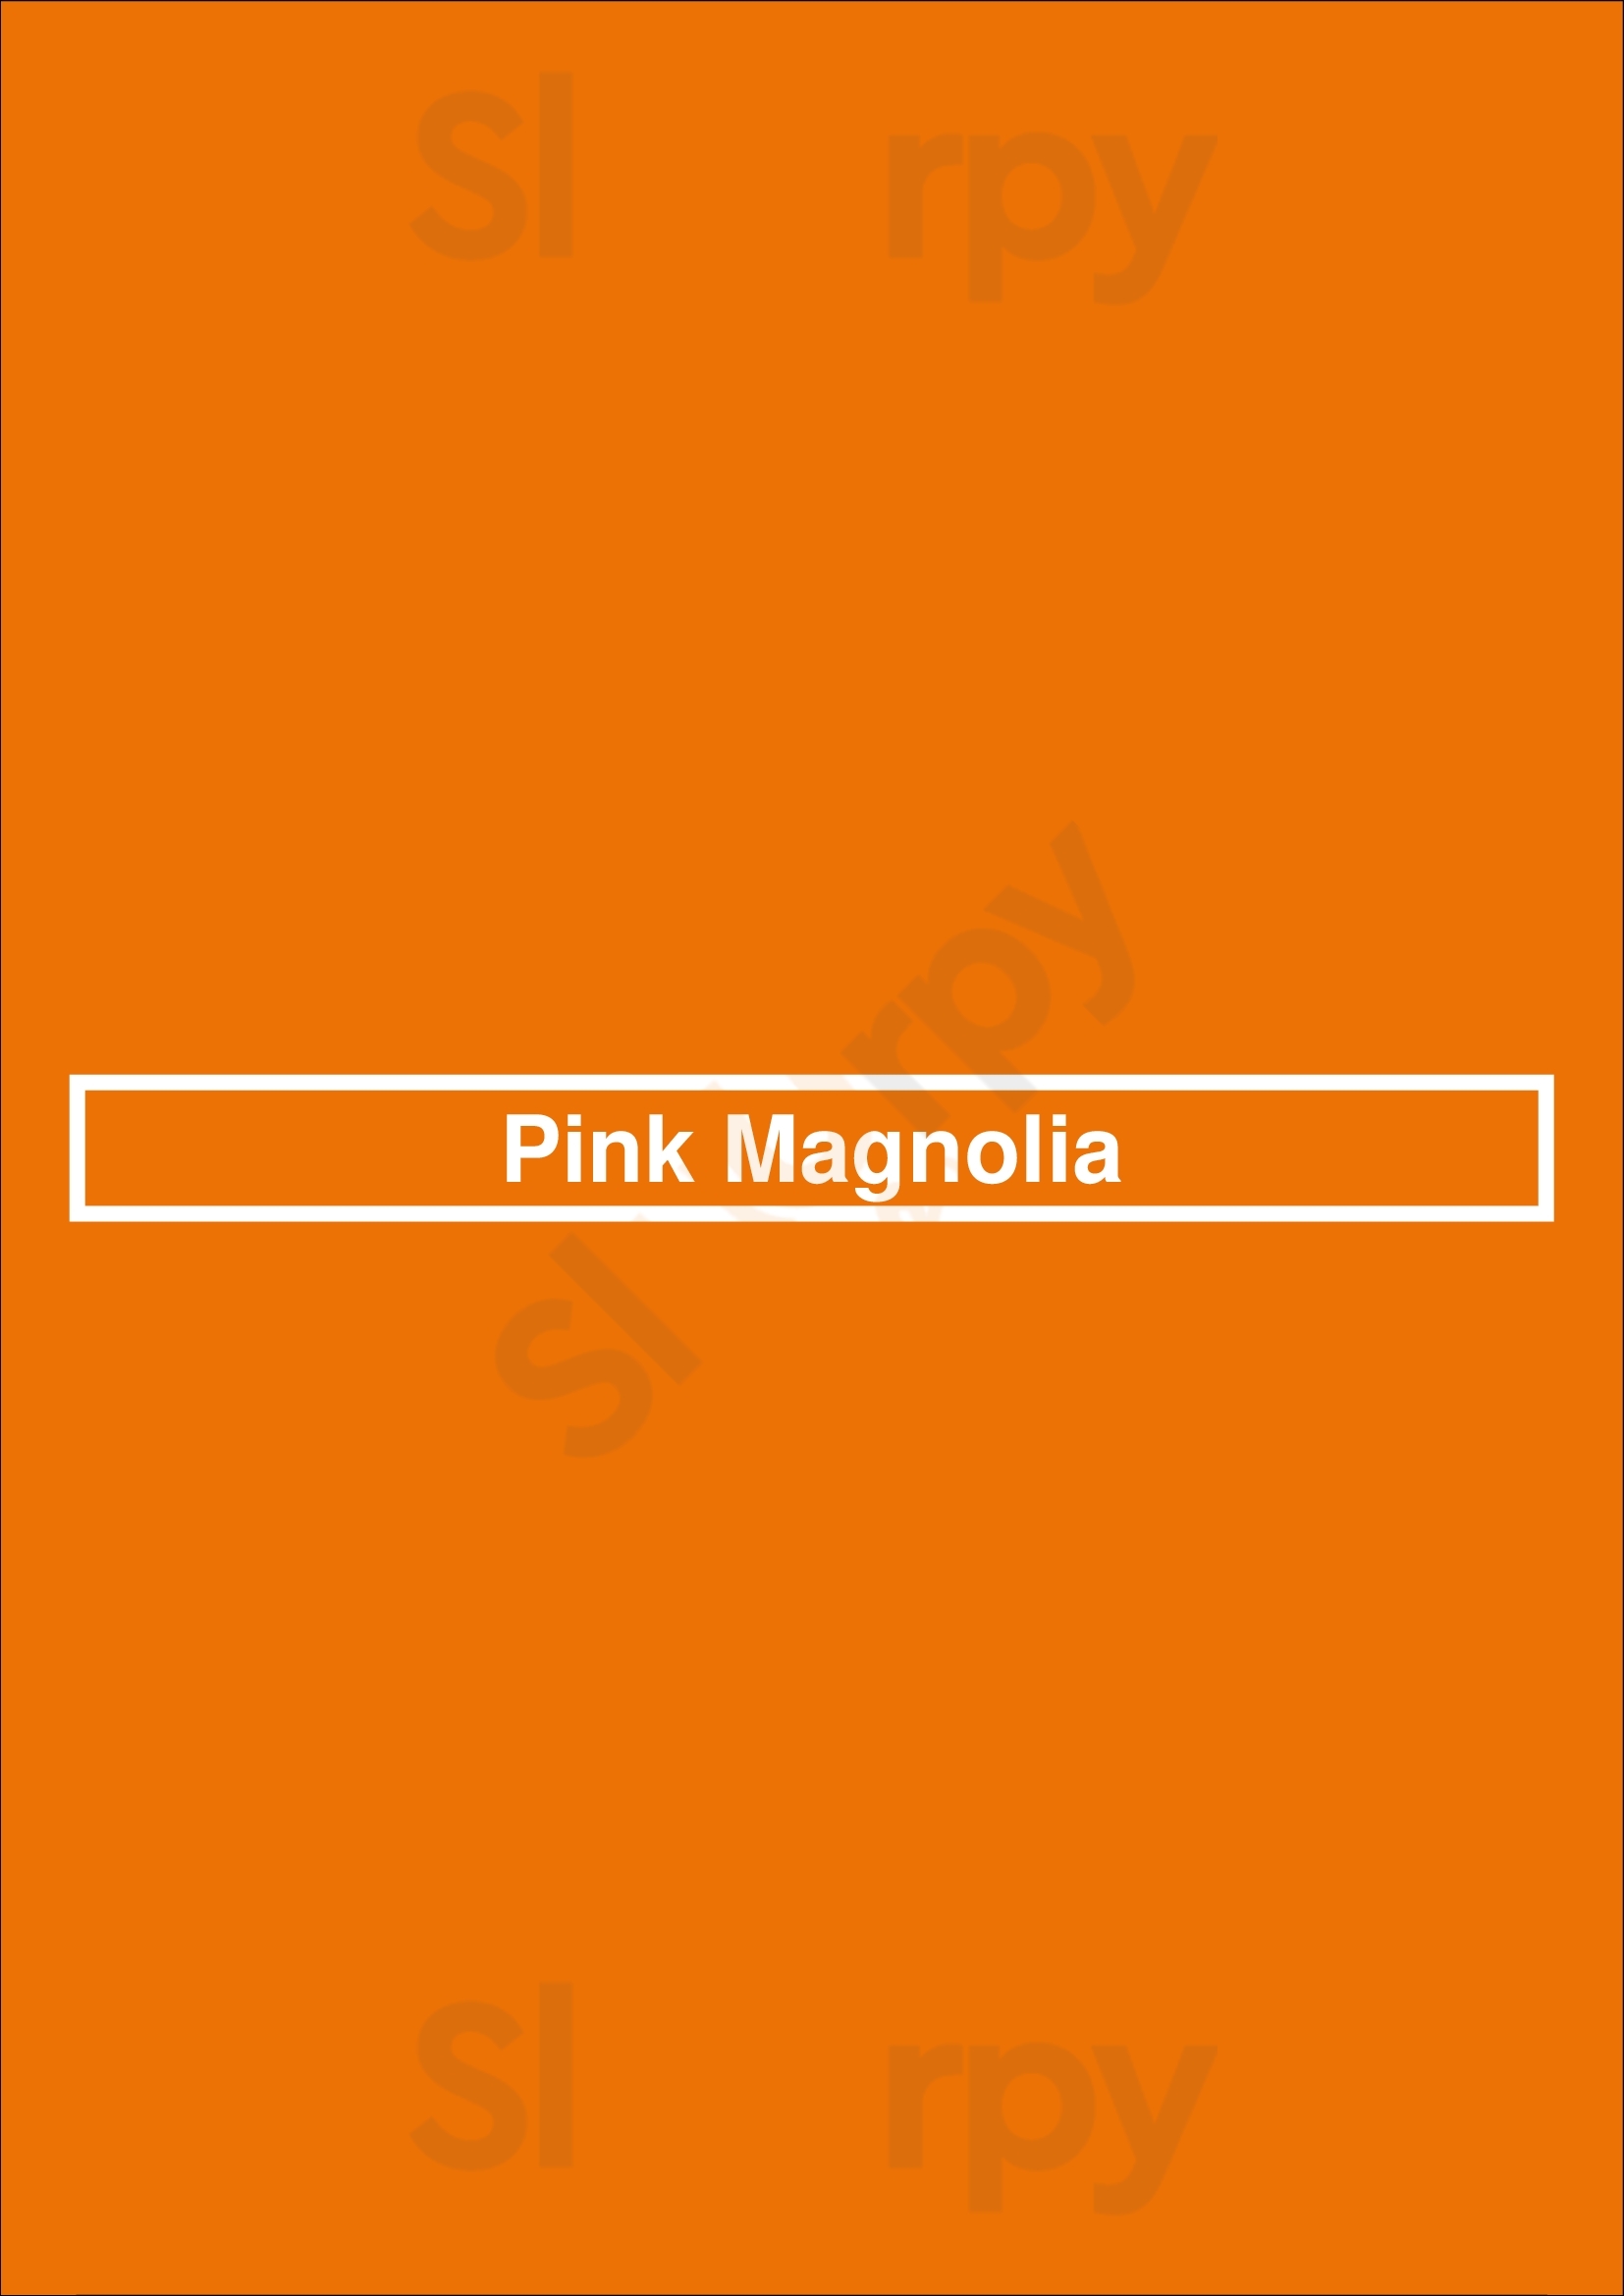 Pink Magnolia Dallas Menu - 1